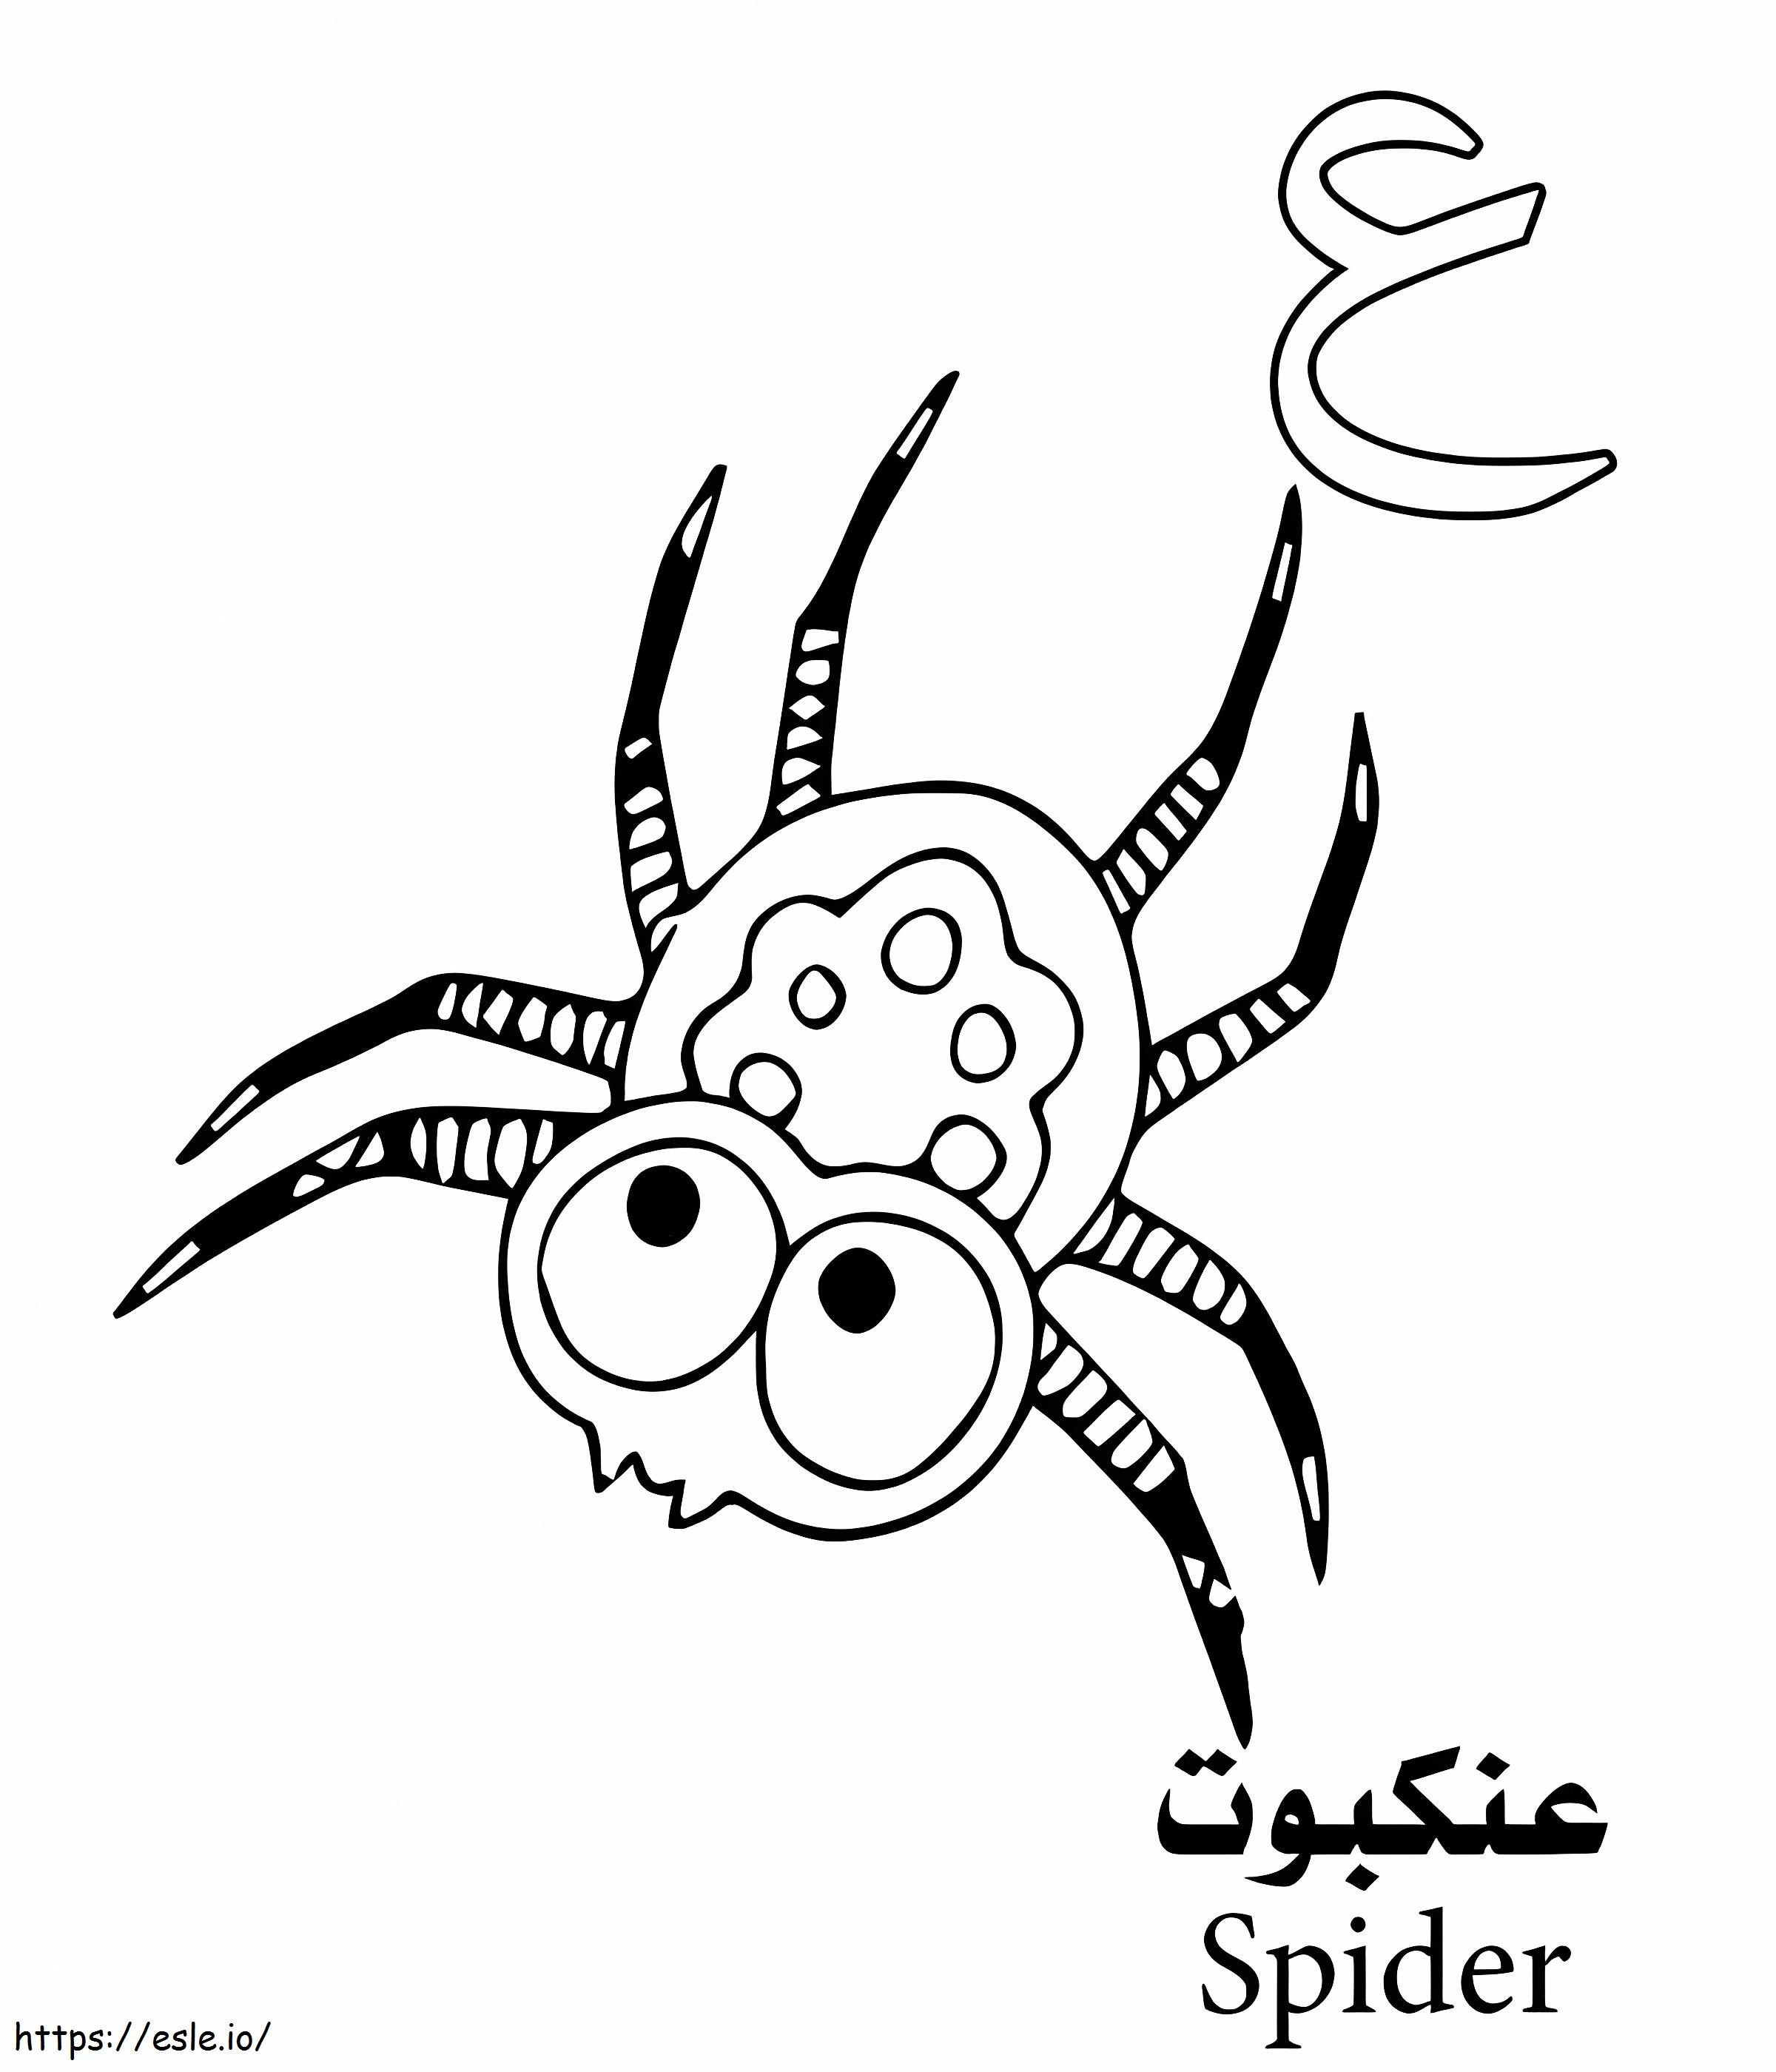 Spinnen-Arabisches Alphabet ausmalbilder